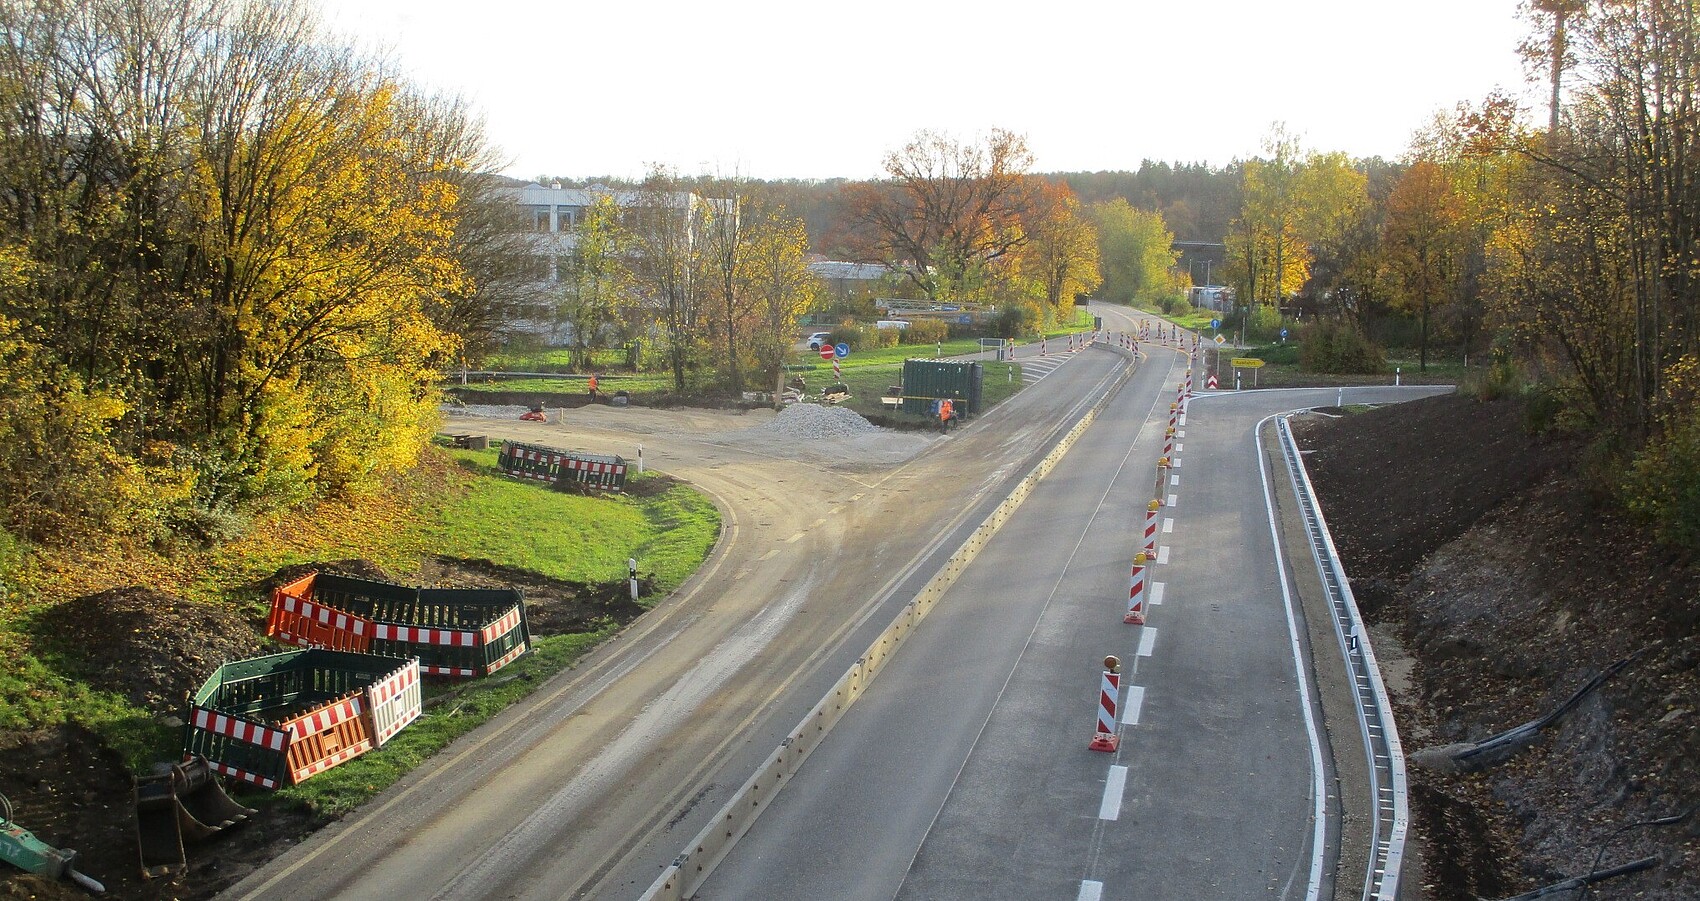 Man blickt auf die Baustelle B 312 in Blickrichtung Reutlingen; Leitbaken mit Licht; links Sträucher und ein Gebäude; 